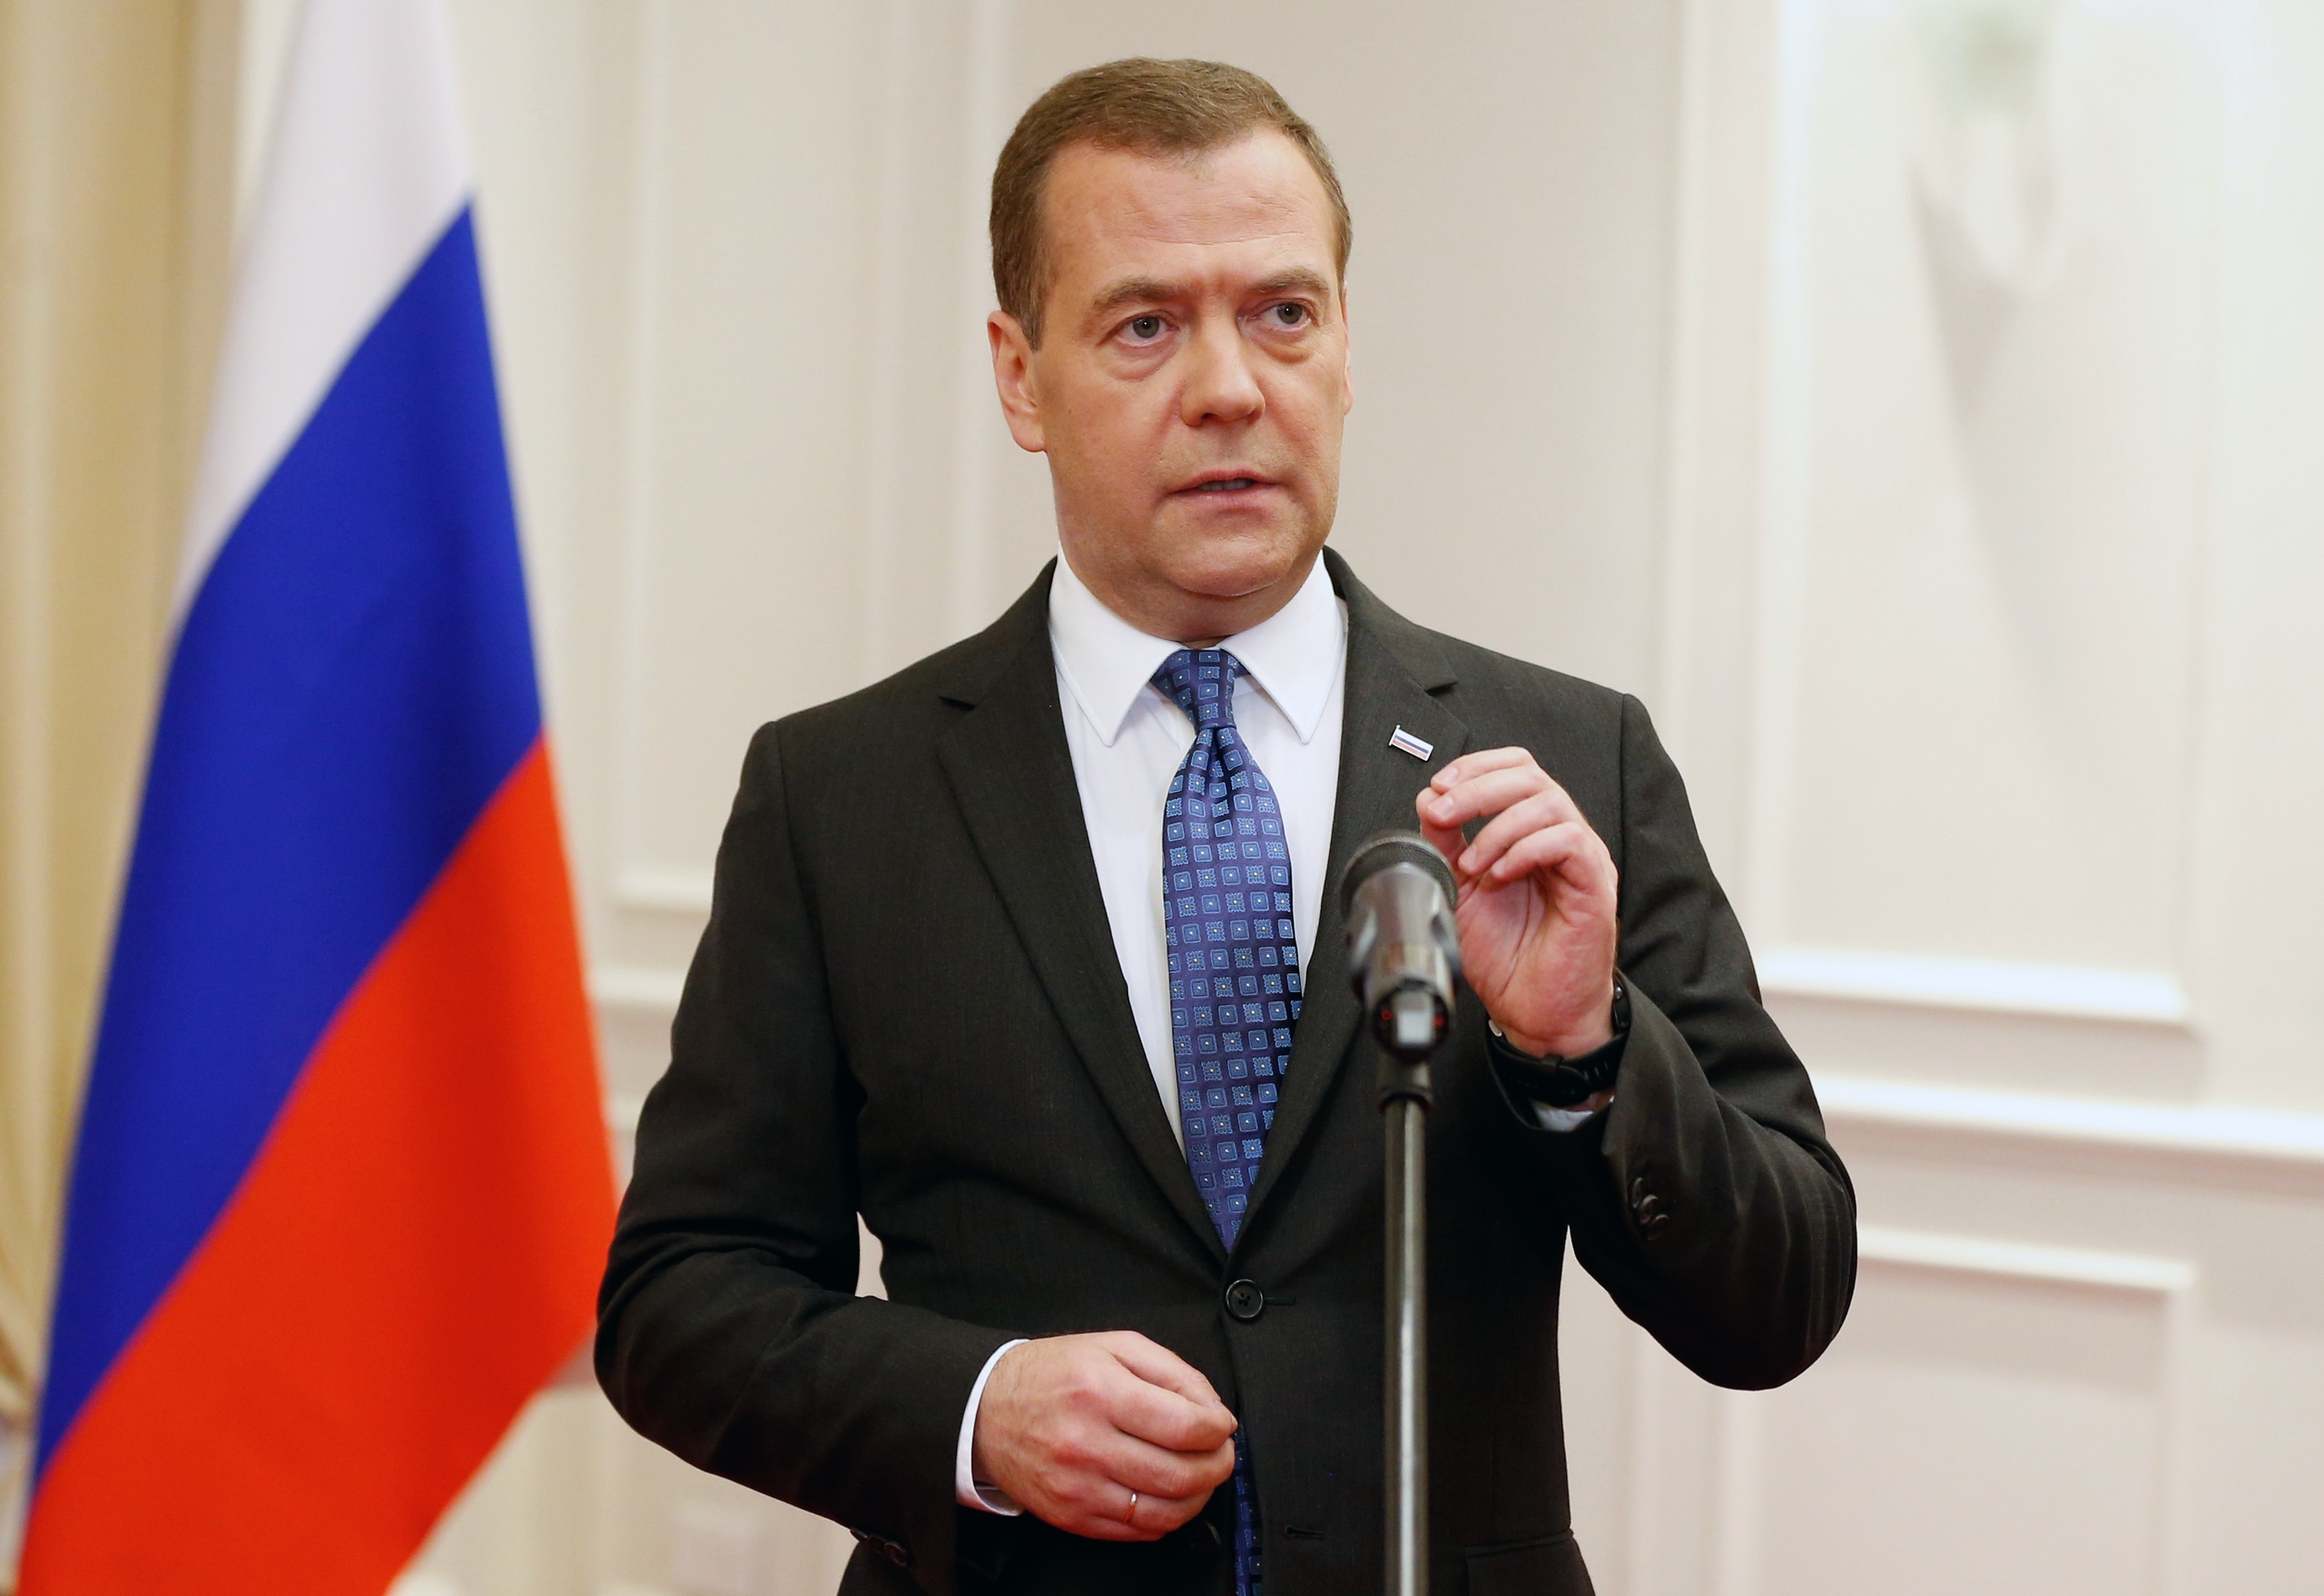 Единственная форма власти пригодная для россии. Медведев на фоне флага России. Медведев д а в военной форме.